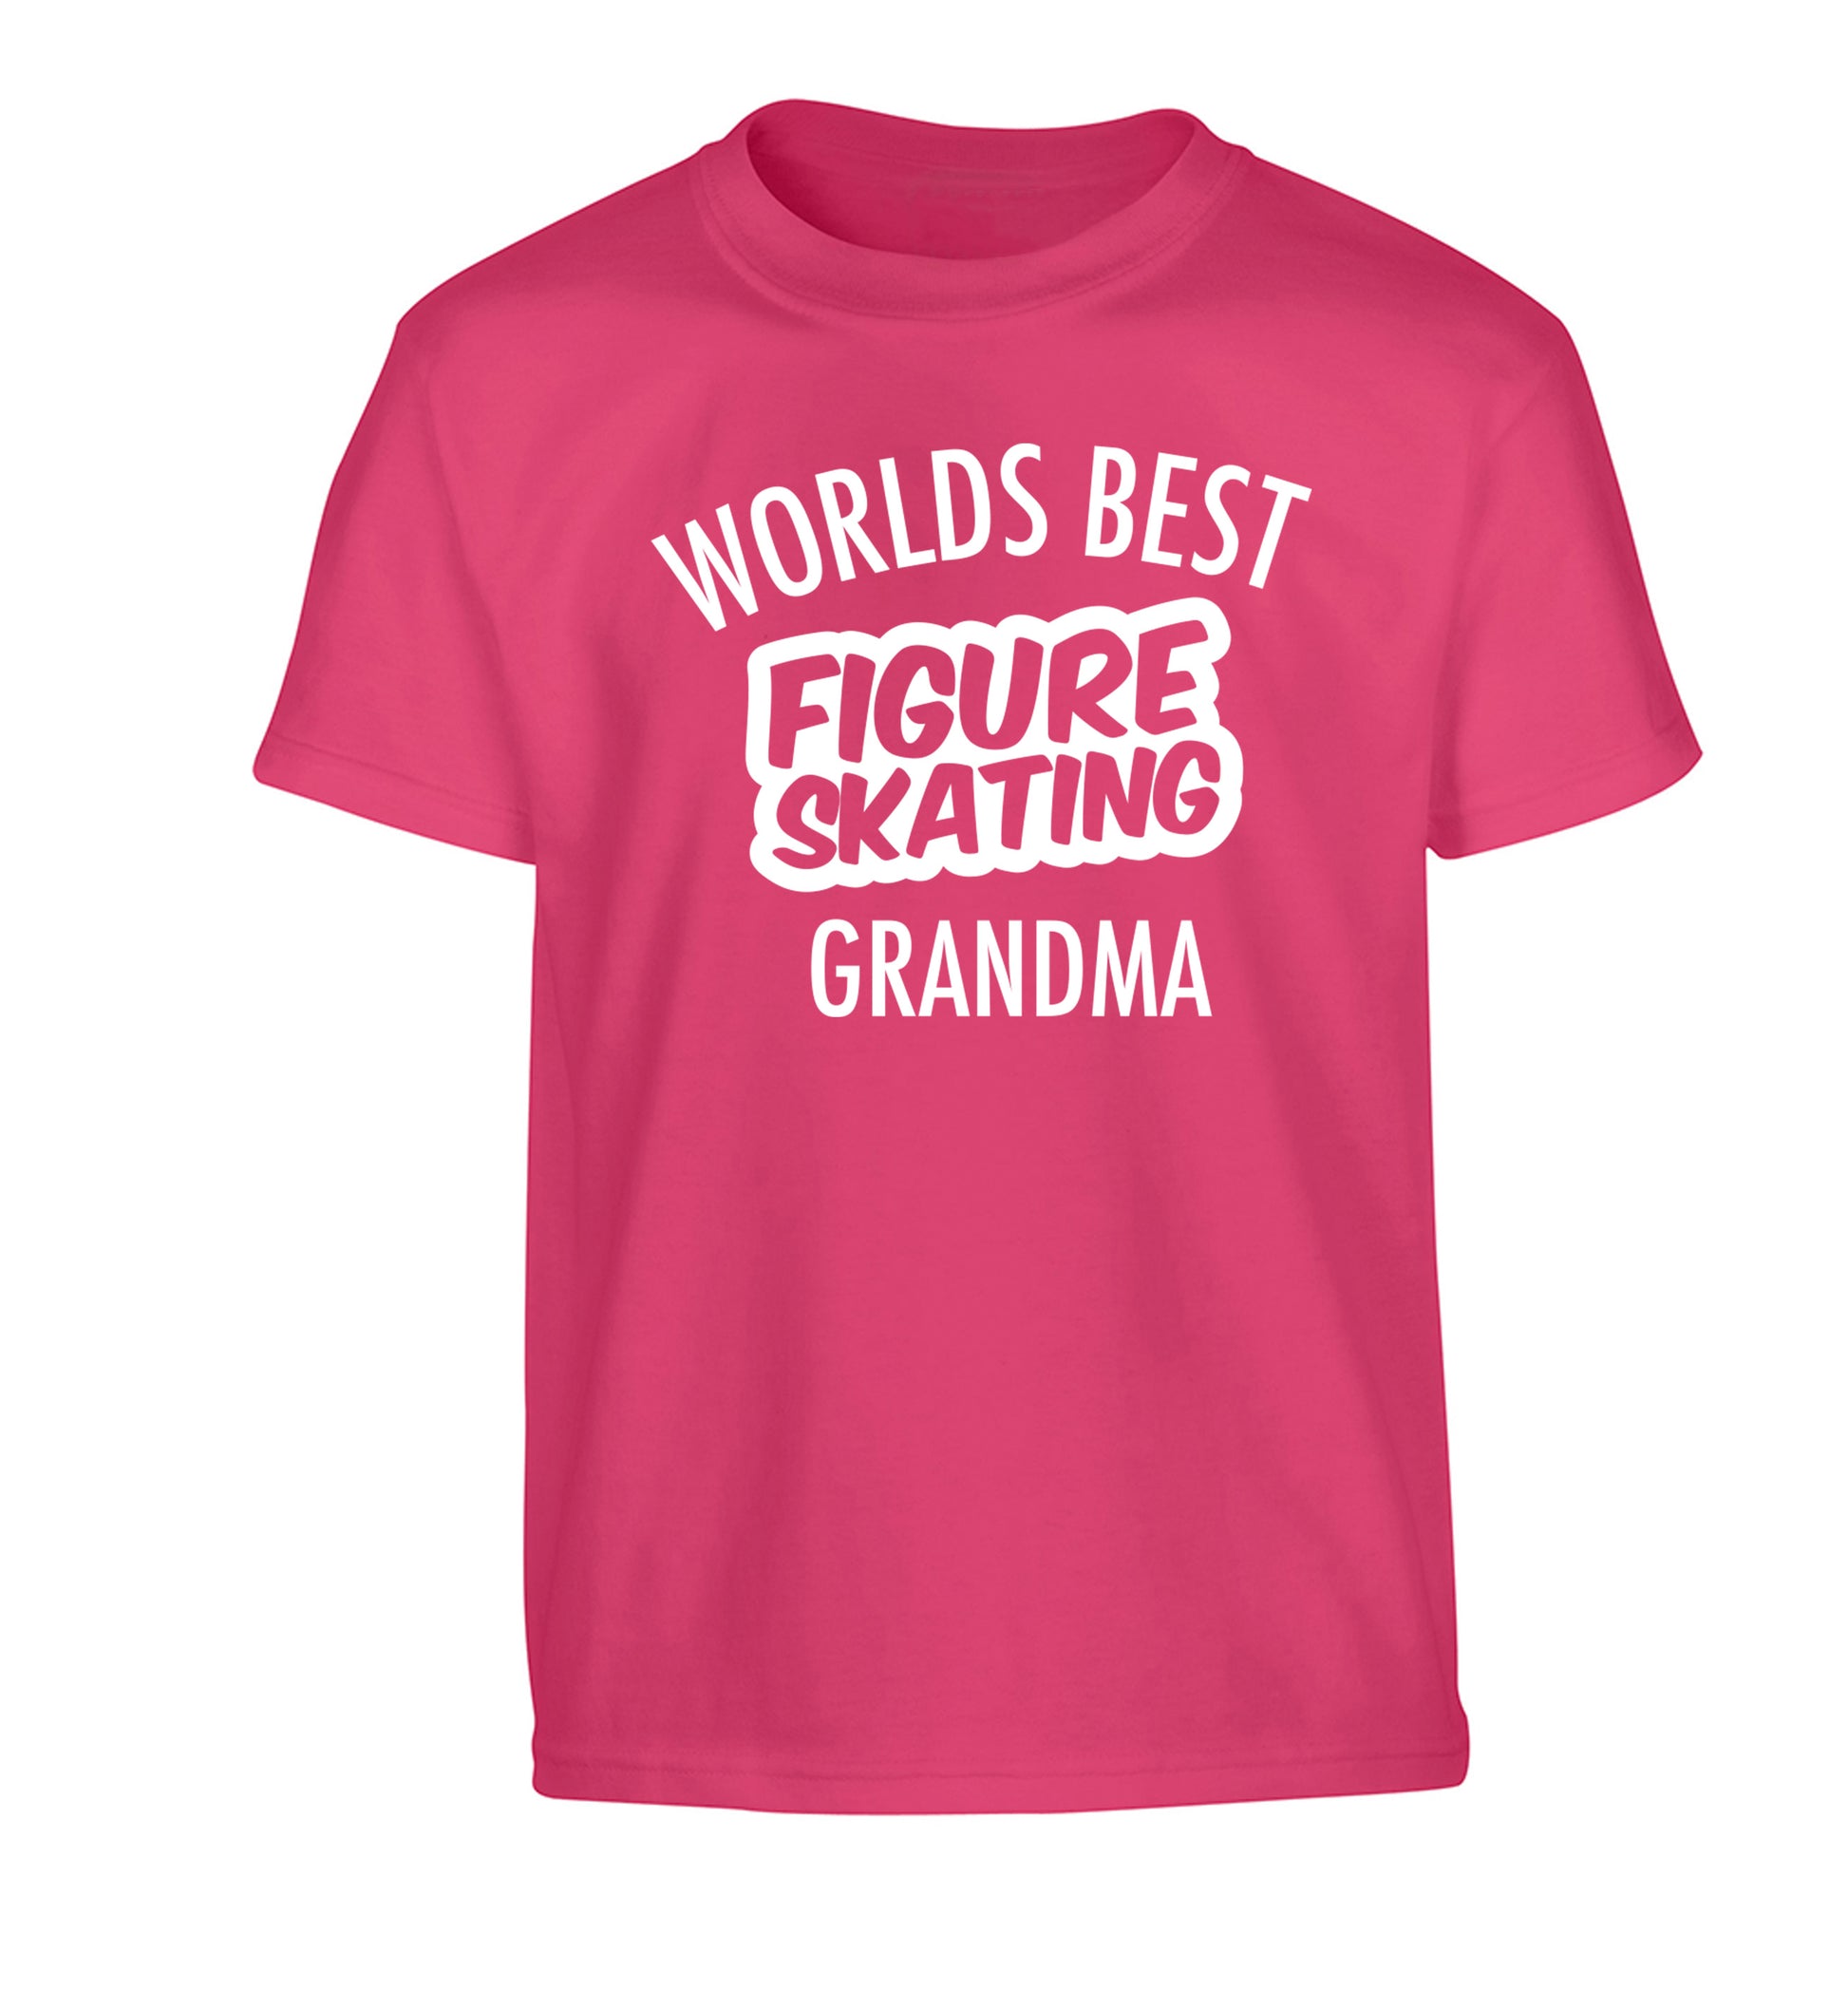 Worlds best figure skating grandma Children's pink Tshirt 12-14 Years